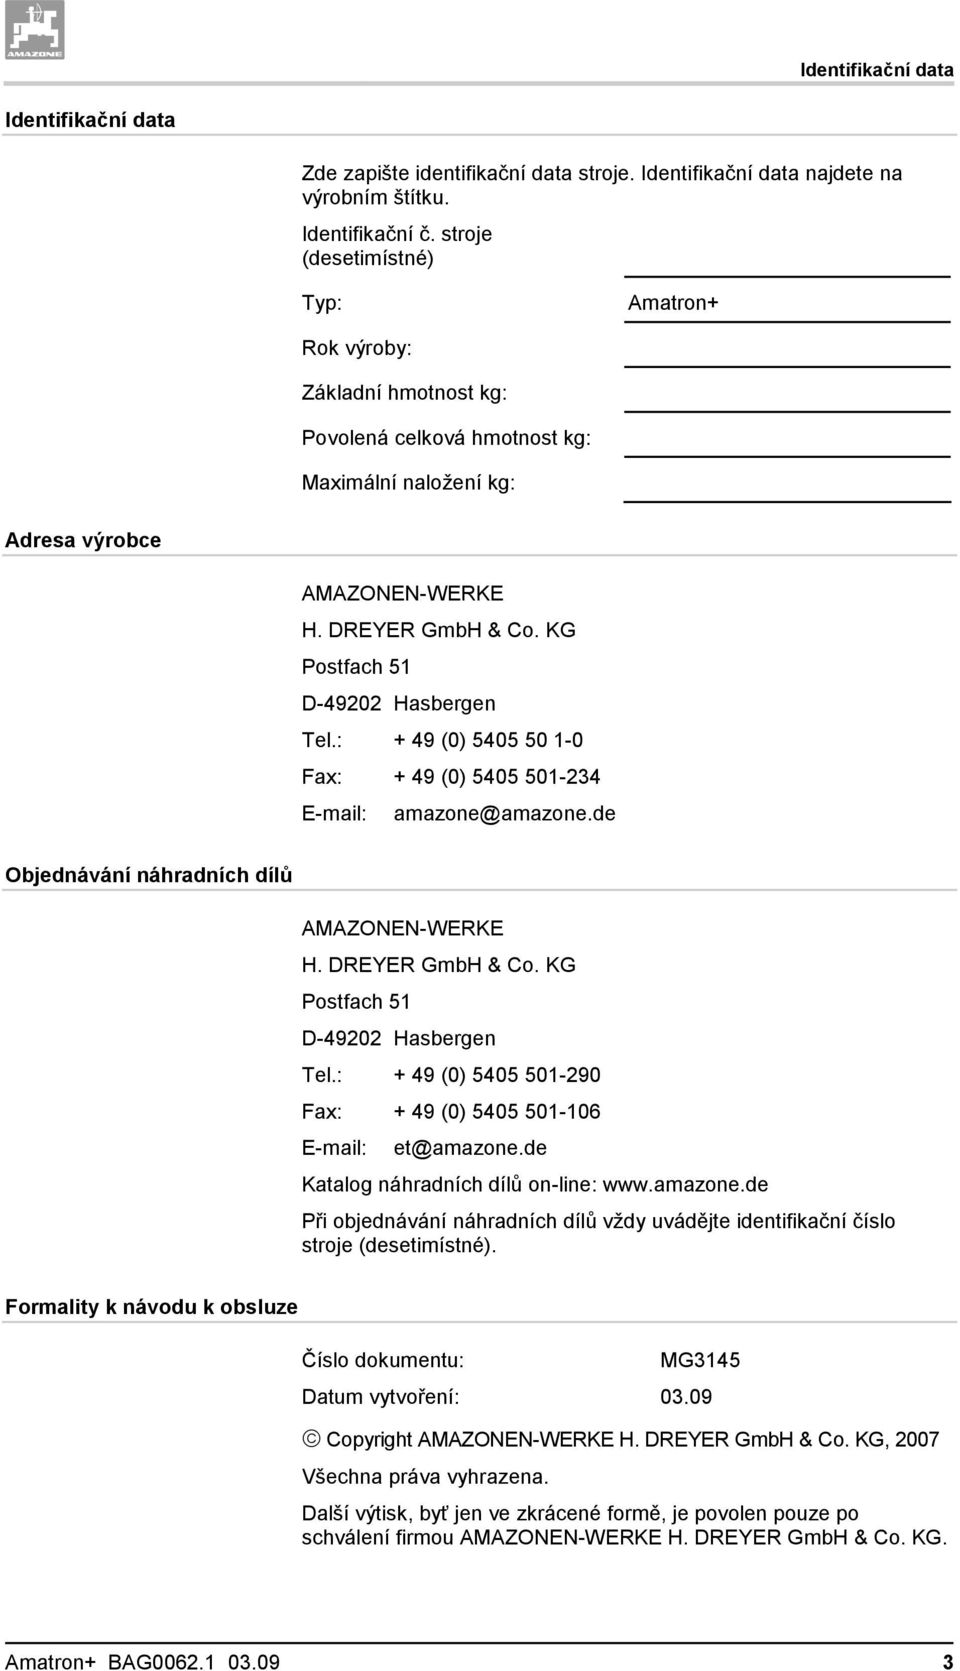 KG Postfach 51 D-49202 Hasbergen Tel.: + 49 (0) 5405 50 1-0 Fax: + 49 (0) 5405 501-234 E-mail: amazone@amazone.de Objednávání náhradních dílů AMAZONEN-WERKE H. DREYER GmbH & Co.